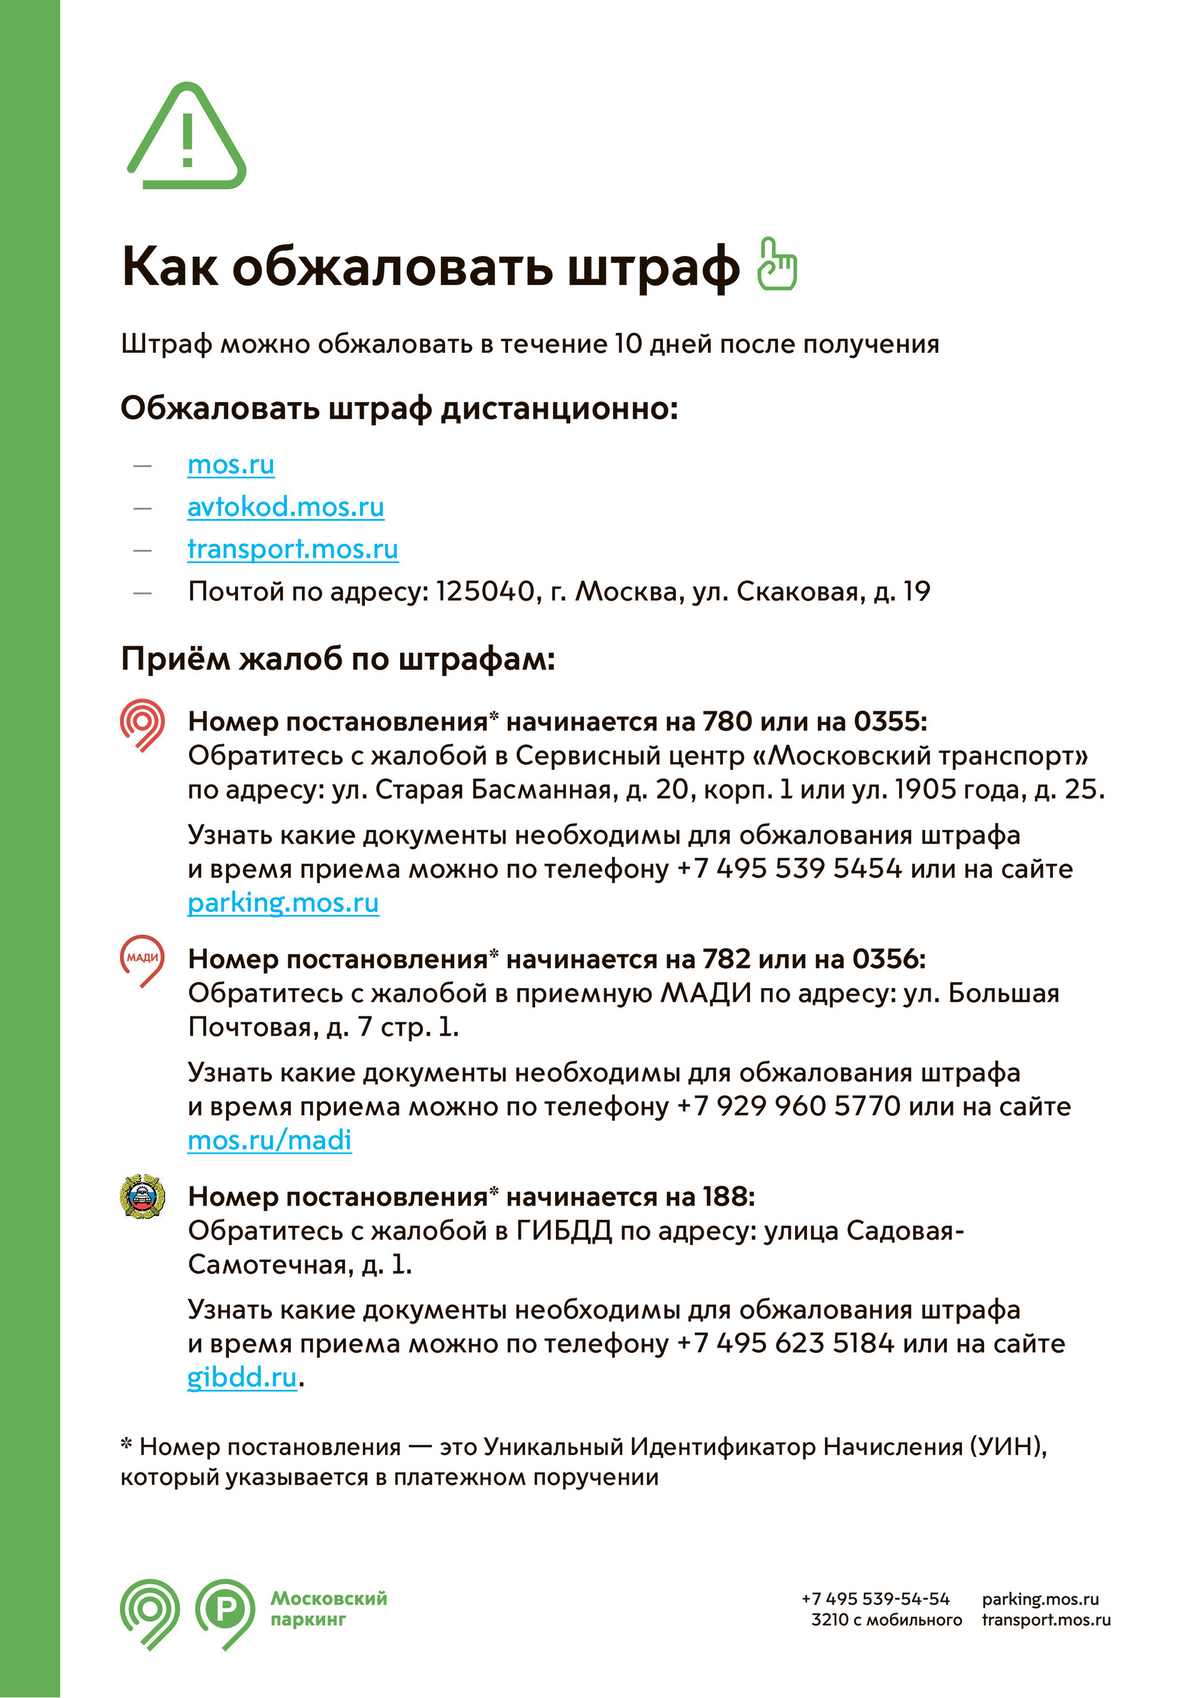 В памятке приведены условия начисления и обжалования штрафов. Источник: parking.mos.ru